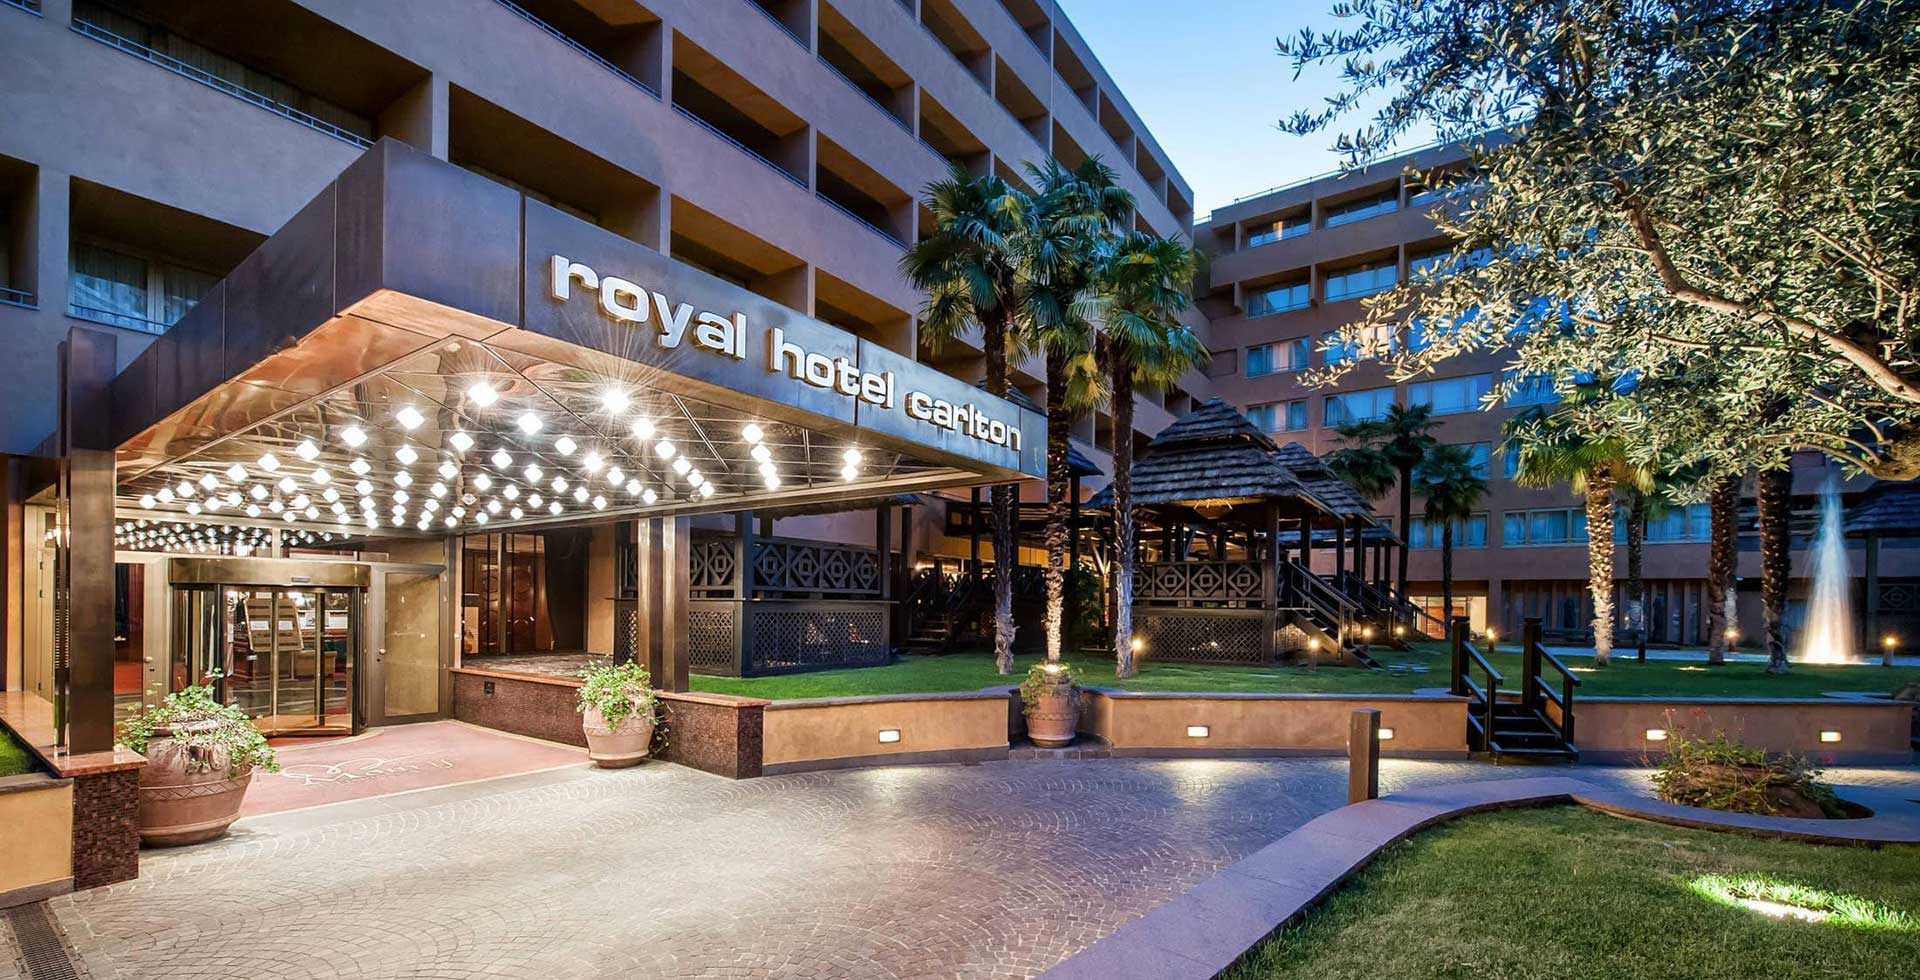 Royal Hotel Carlton